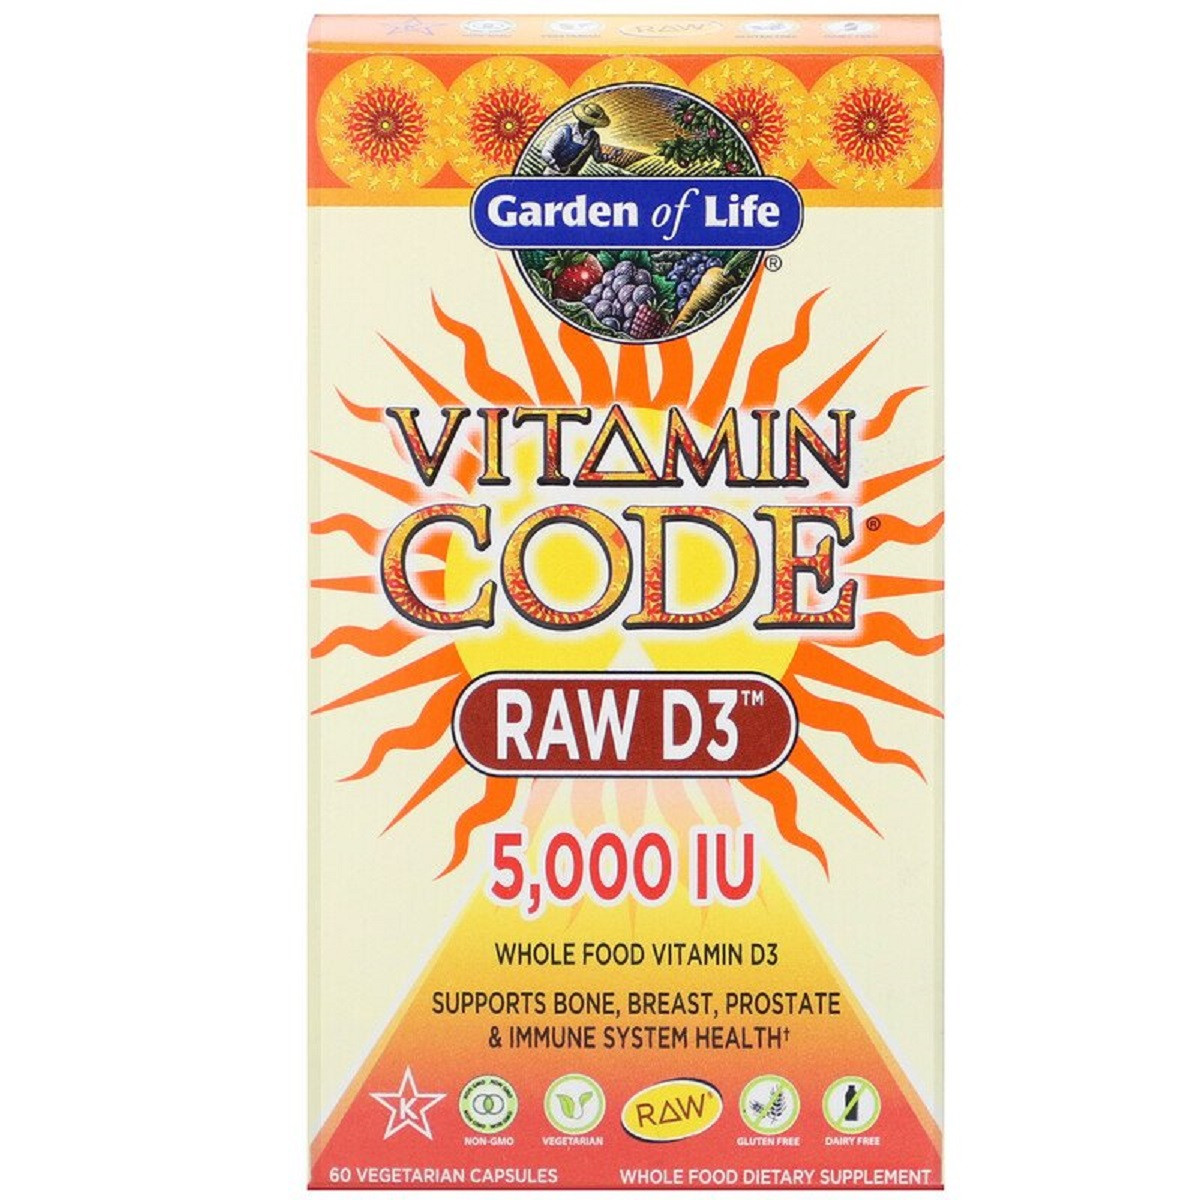 Сирої Вітамін D3, RAW D3, Vitamin Code, Garden of Life, 5000 МО (125 мкг), 60 капсул вегетаріанських